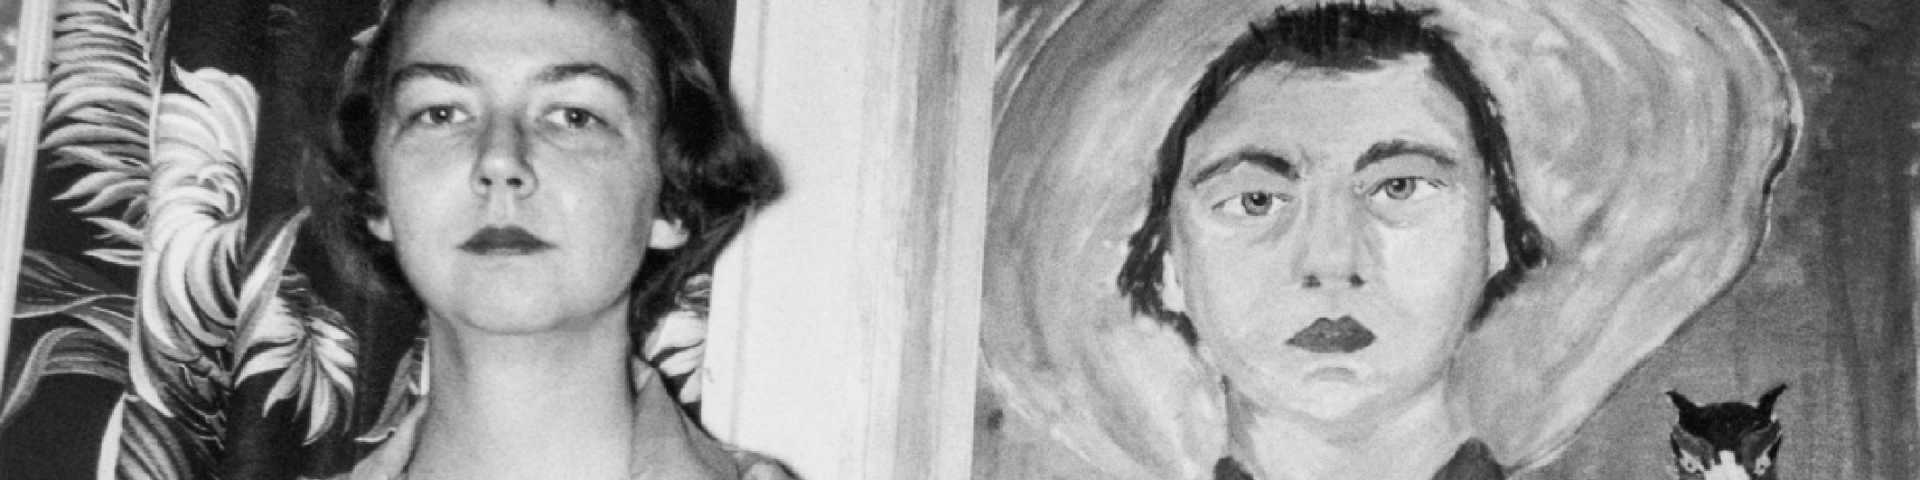 Јужњачка готика Фленери О’Конор и песме изведене из њених прича: Поглед право у ништавило